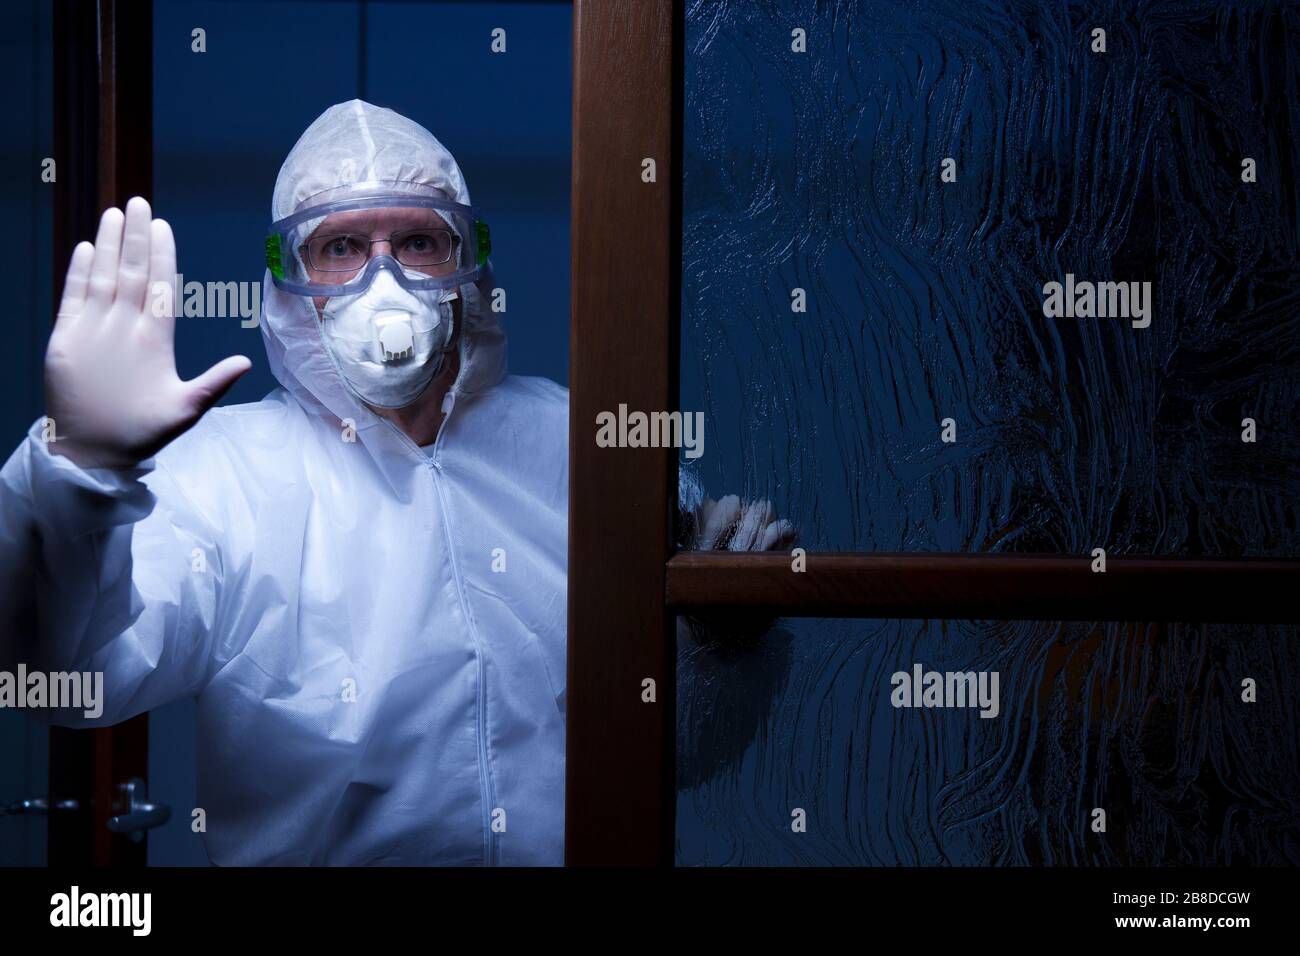 Arzt mit Schutzkleidung an einem Eingang eines Krankenhauses hält Menschen davon ab zu betreten - nachts mit dunkelblauem Hintergrund erschossen Stockfoto